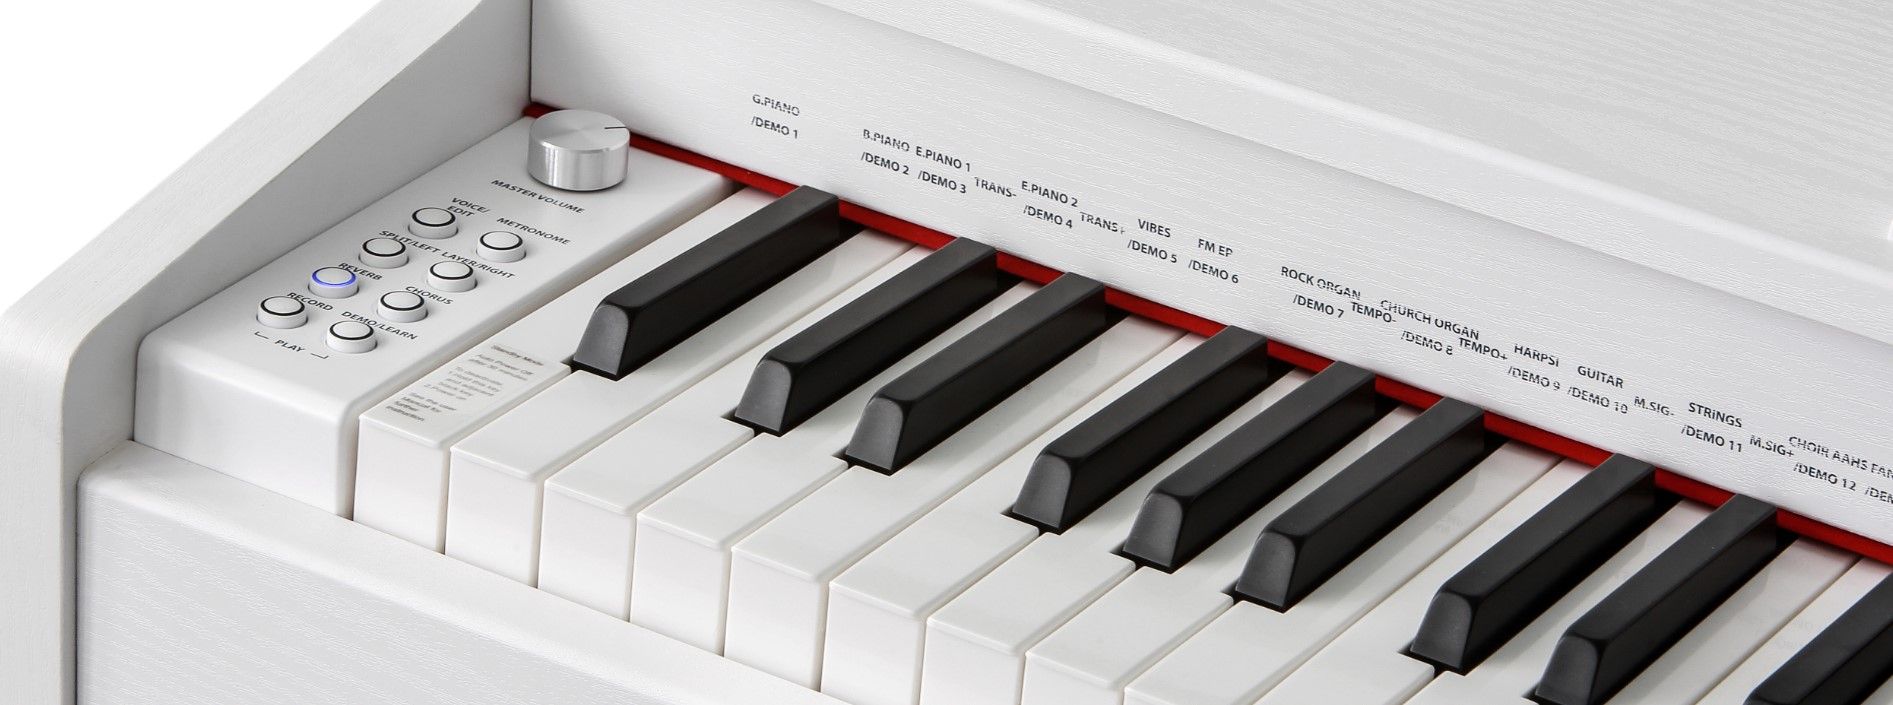  hracie digitálne piano kurzweil M70 wh pripojenie slúchadiel výborný pomer cena kvalita jednoduché ovládanie usb port midi automatické doprovody